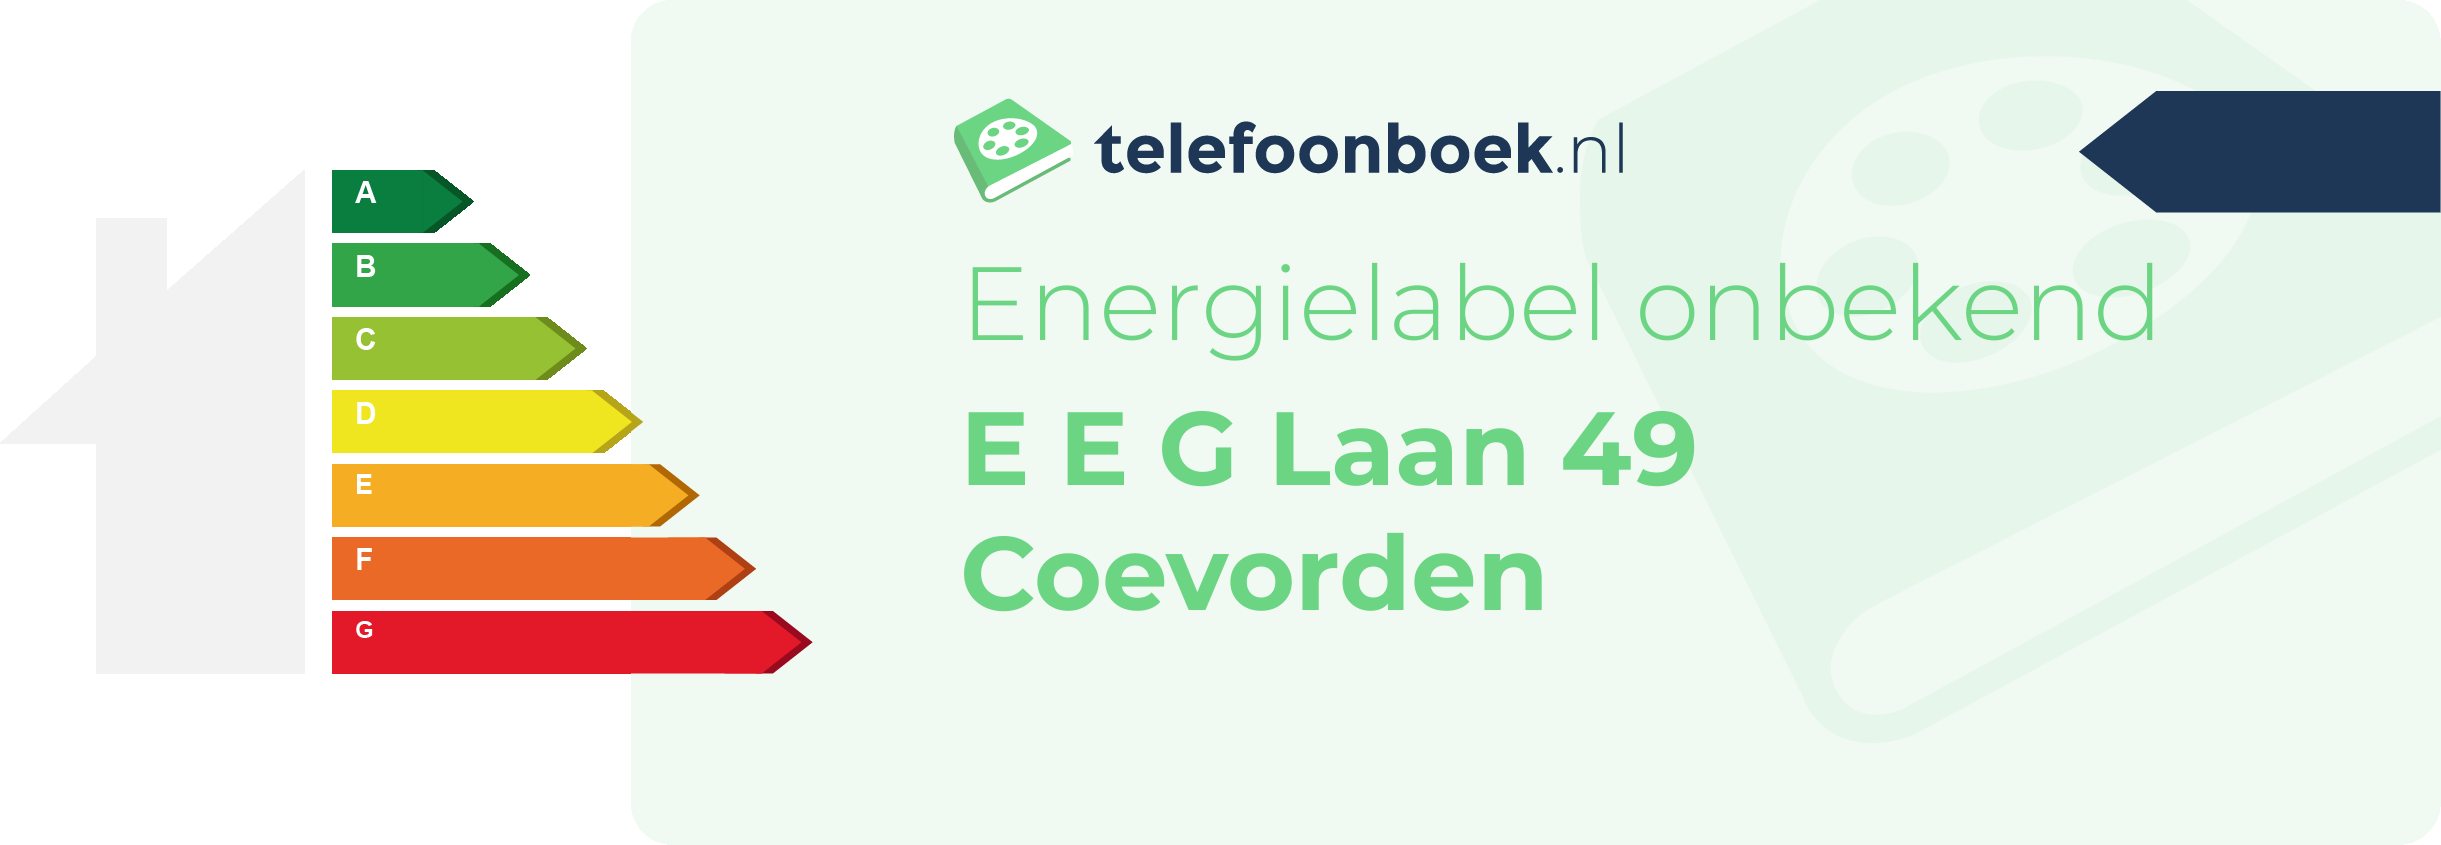 Energielabel E E G Laan 49 Coevorden